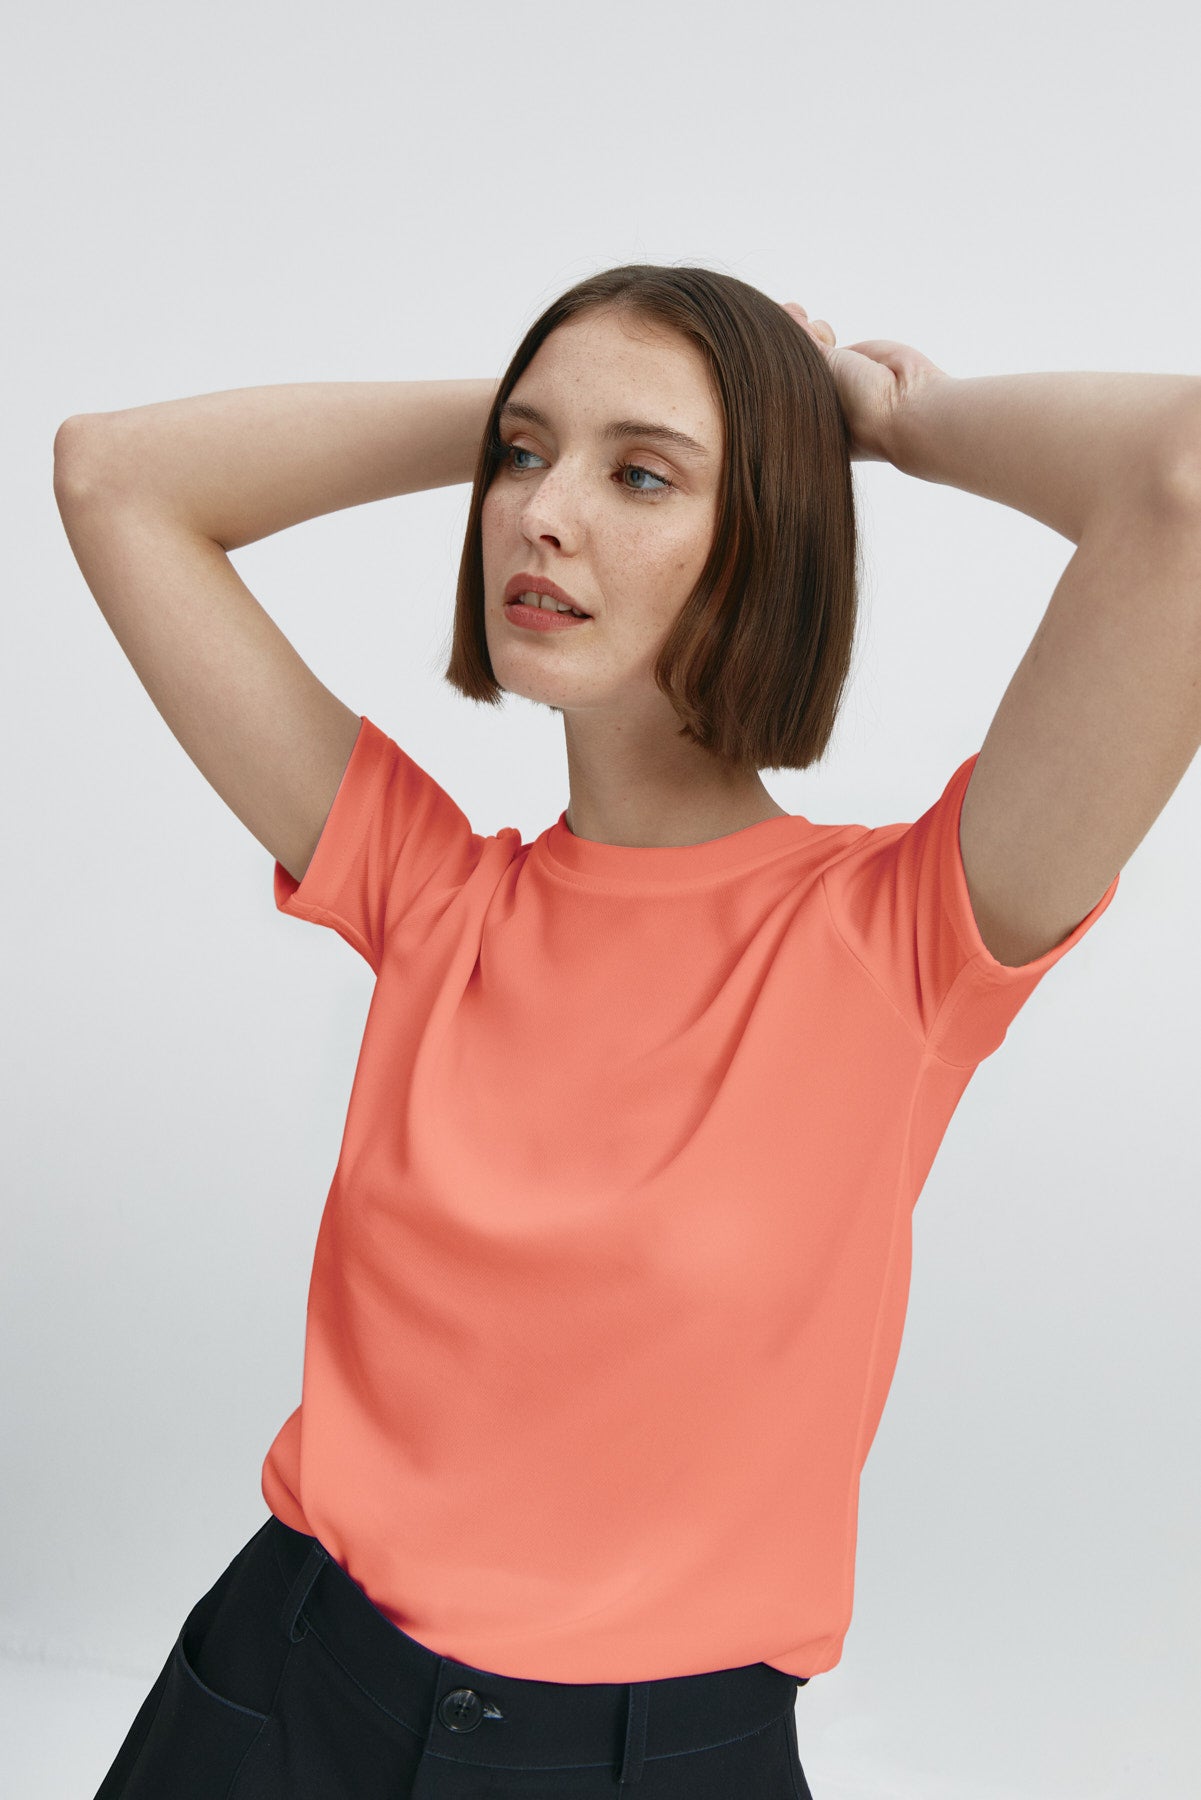 Camiseta básica de mujer coral de manga corta, antiarrugas y antimanchas. Foto flexibilidad